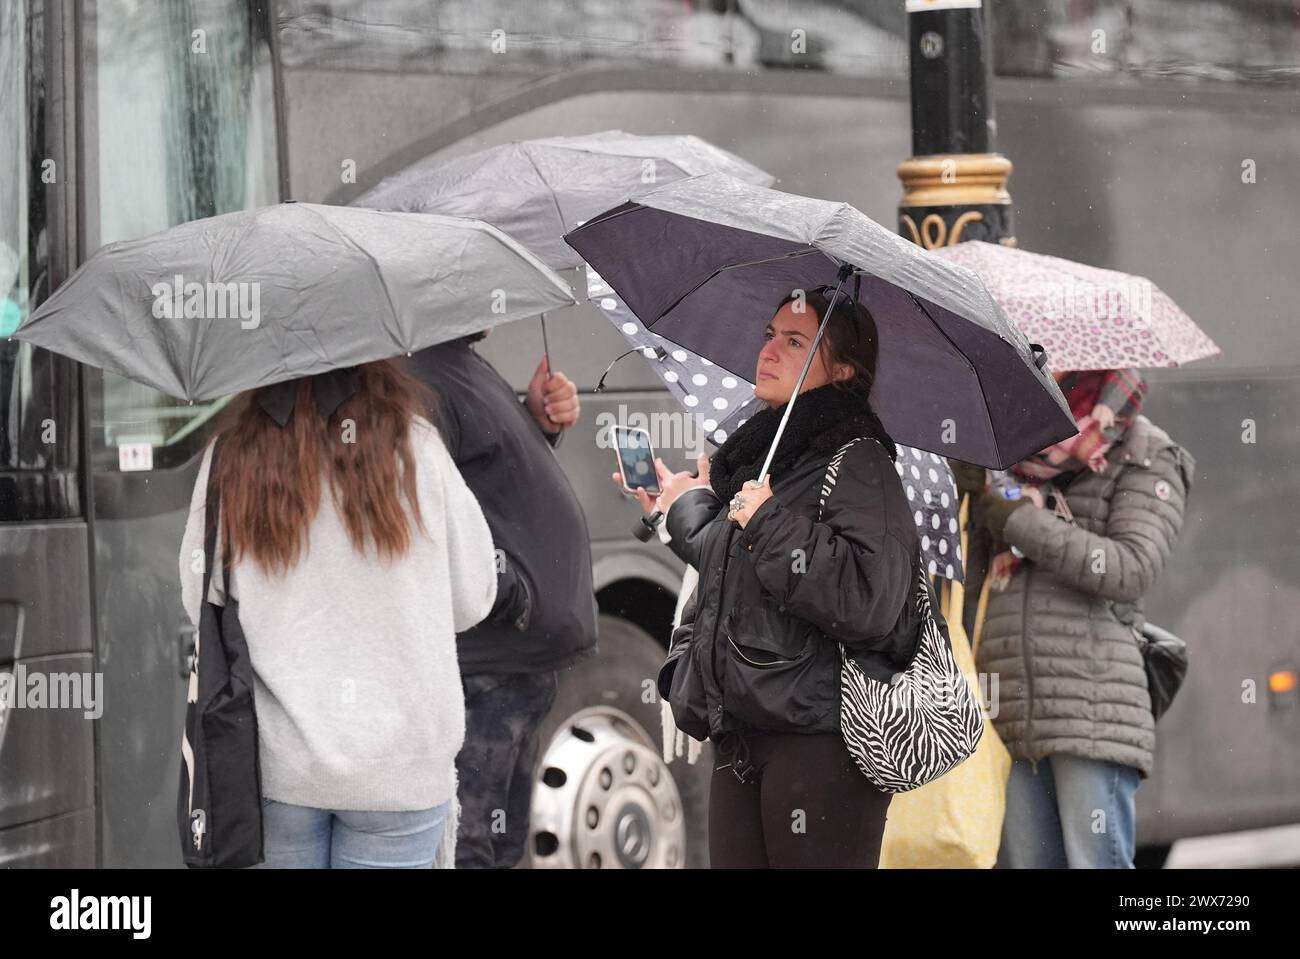 Die Menschen schützen vor dem Regen auf dem Embankment in London. Laut Wettervorhersage bewegt sich ein Gebiet mit Regen, Schneeregen und Bergschnee nach Norden durch Großbritannien, während sich Urlauber auf Osterausflüge vorbereiten. Bilddatum: Donnerstag, 28. März 2024. Stockfoto